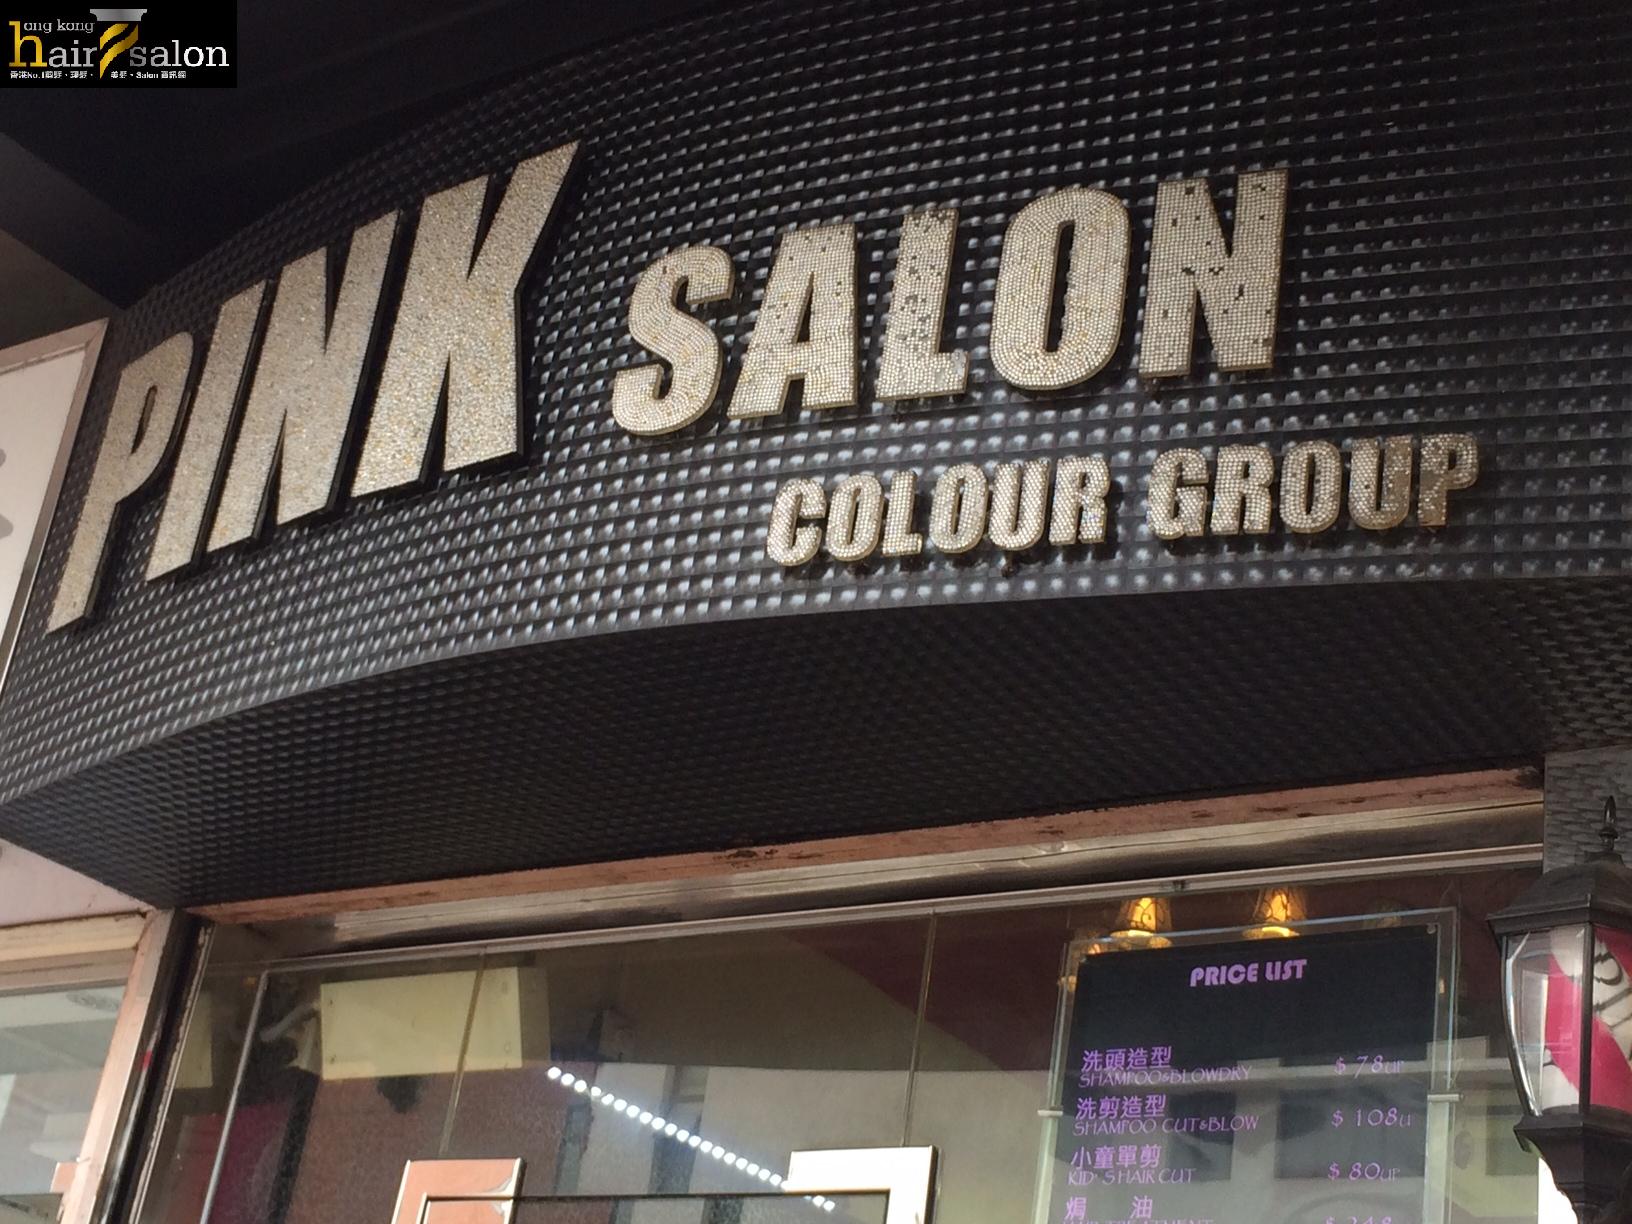 髮型屋Salon集团Pink Salon @ 香港美髮网 HK Hair Salon